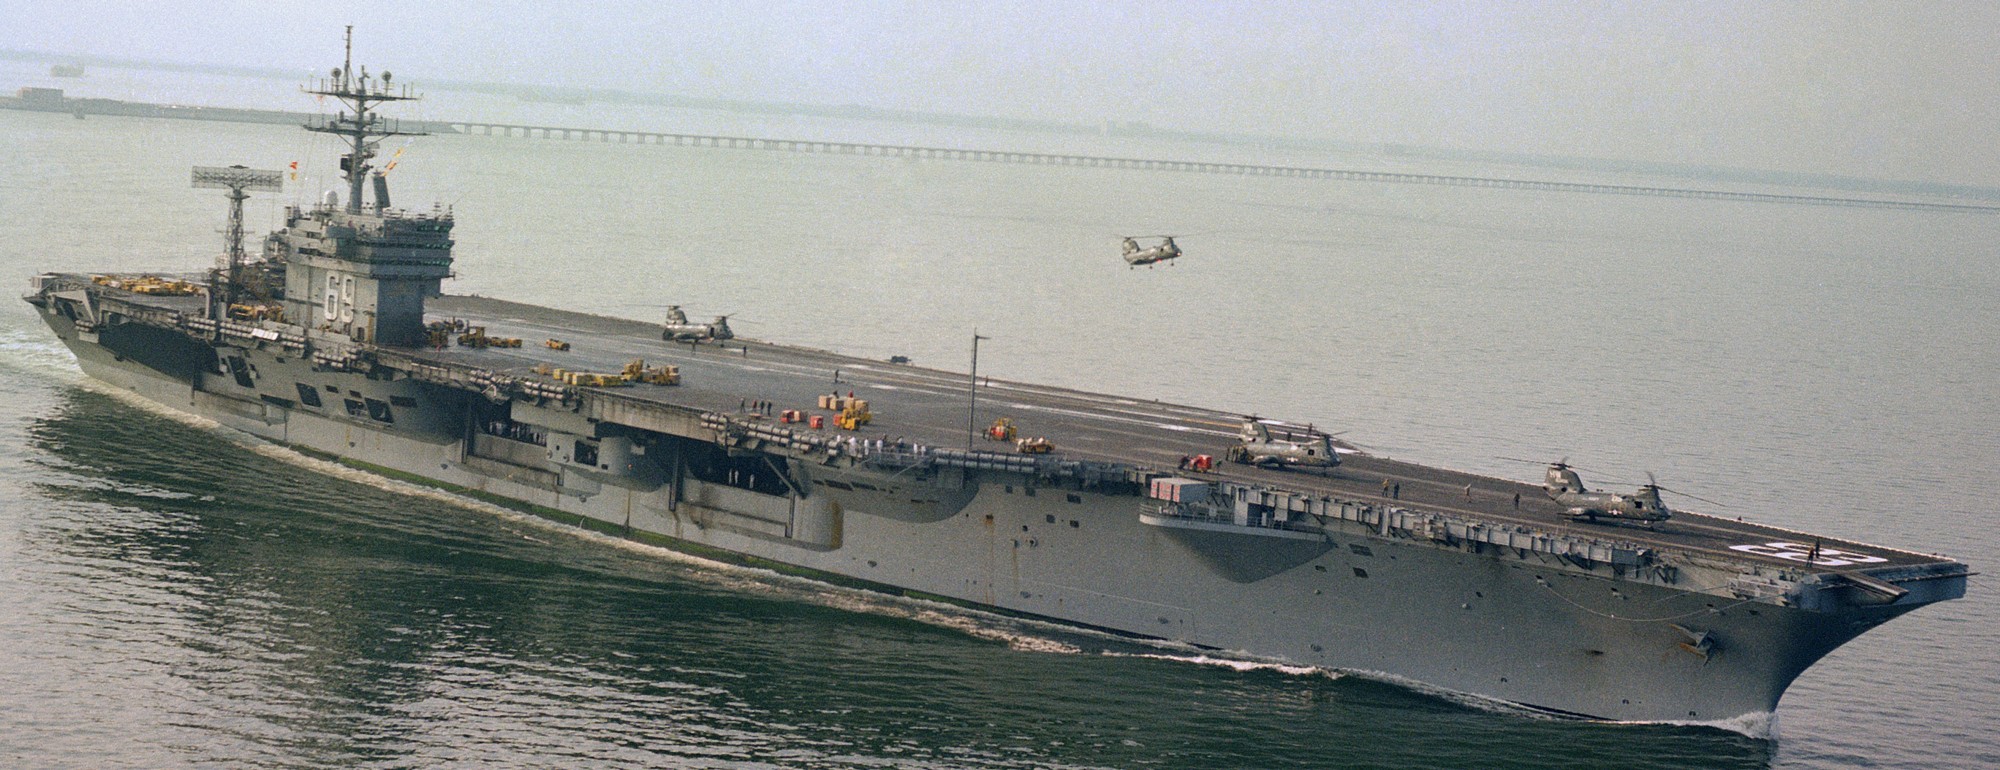 cvn-69 uss dwight d. eisenhower aircraft carrier us navy 289